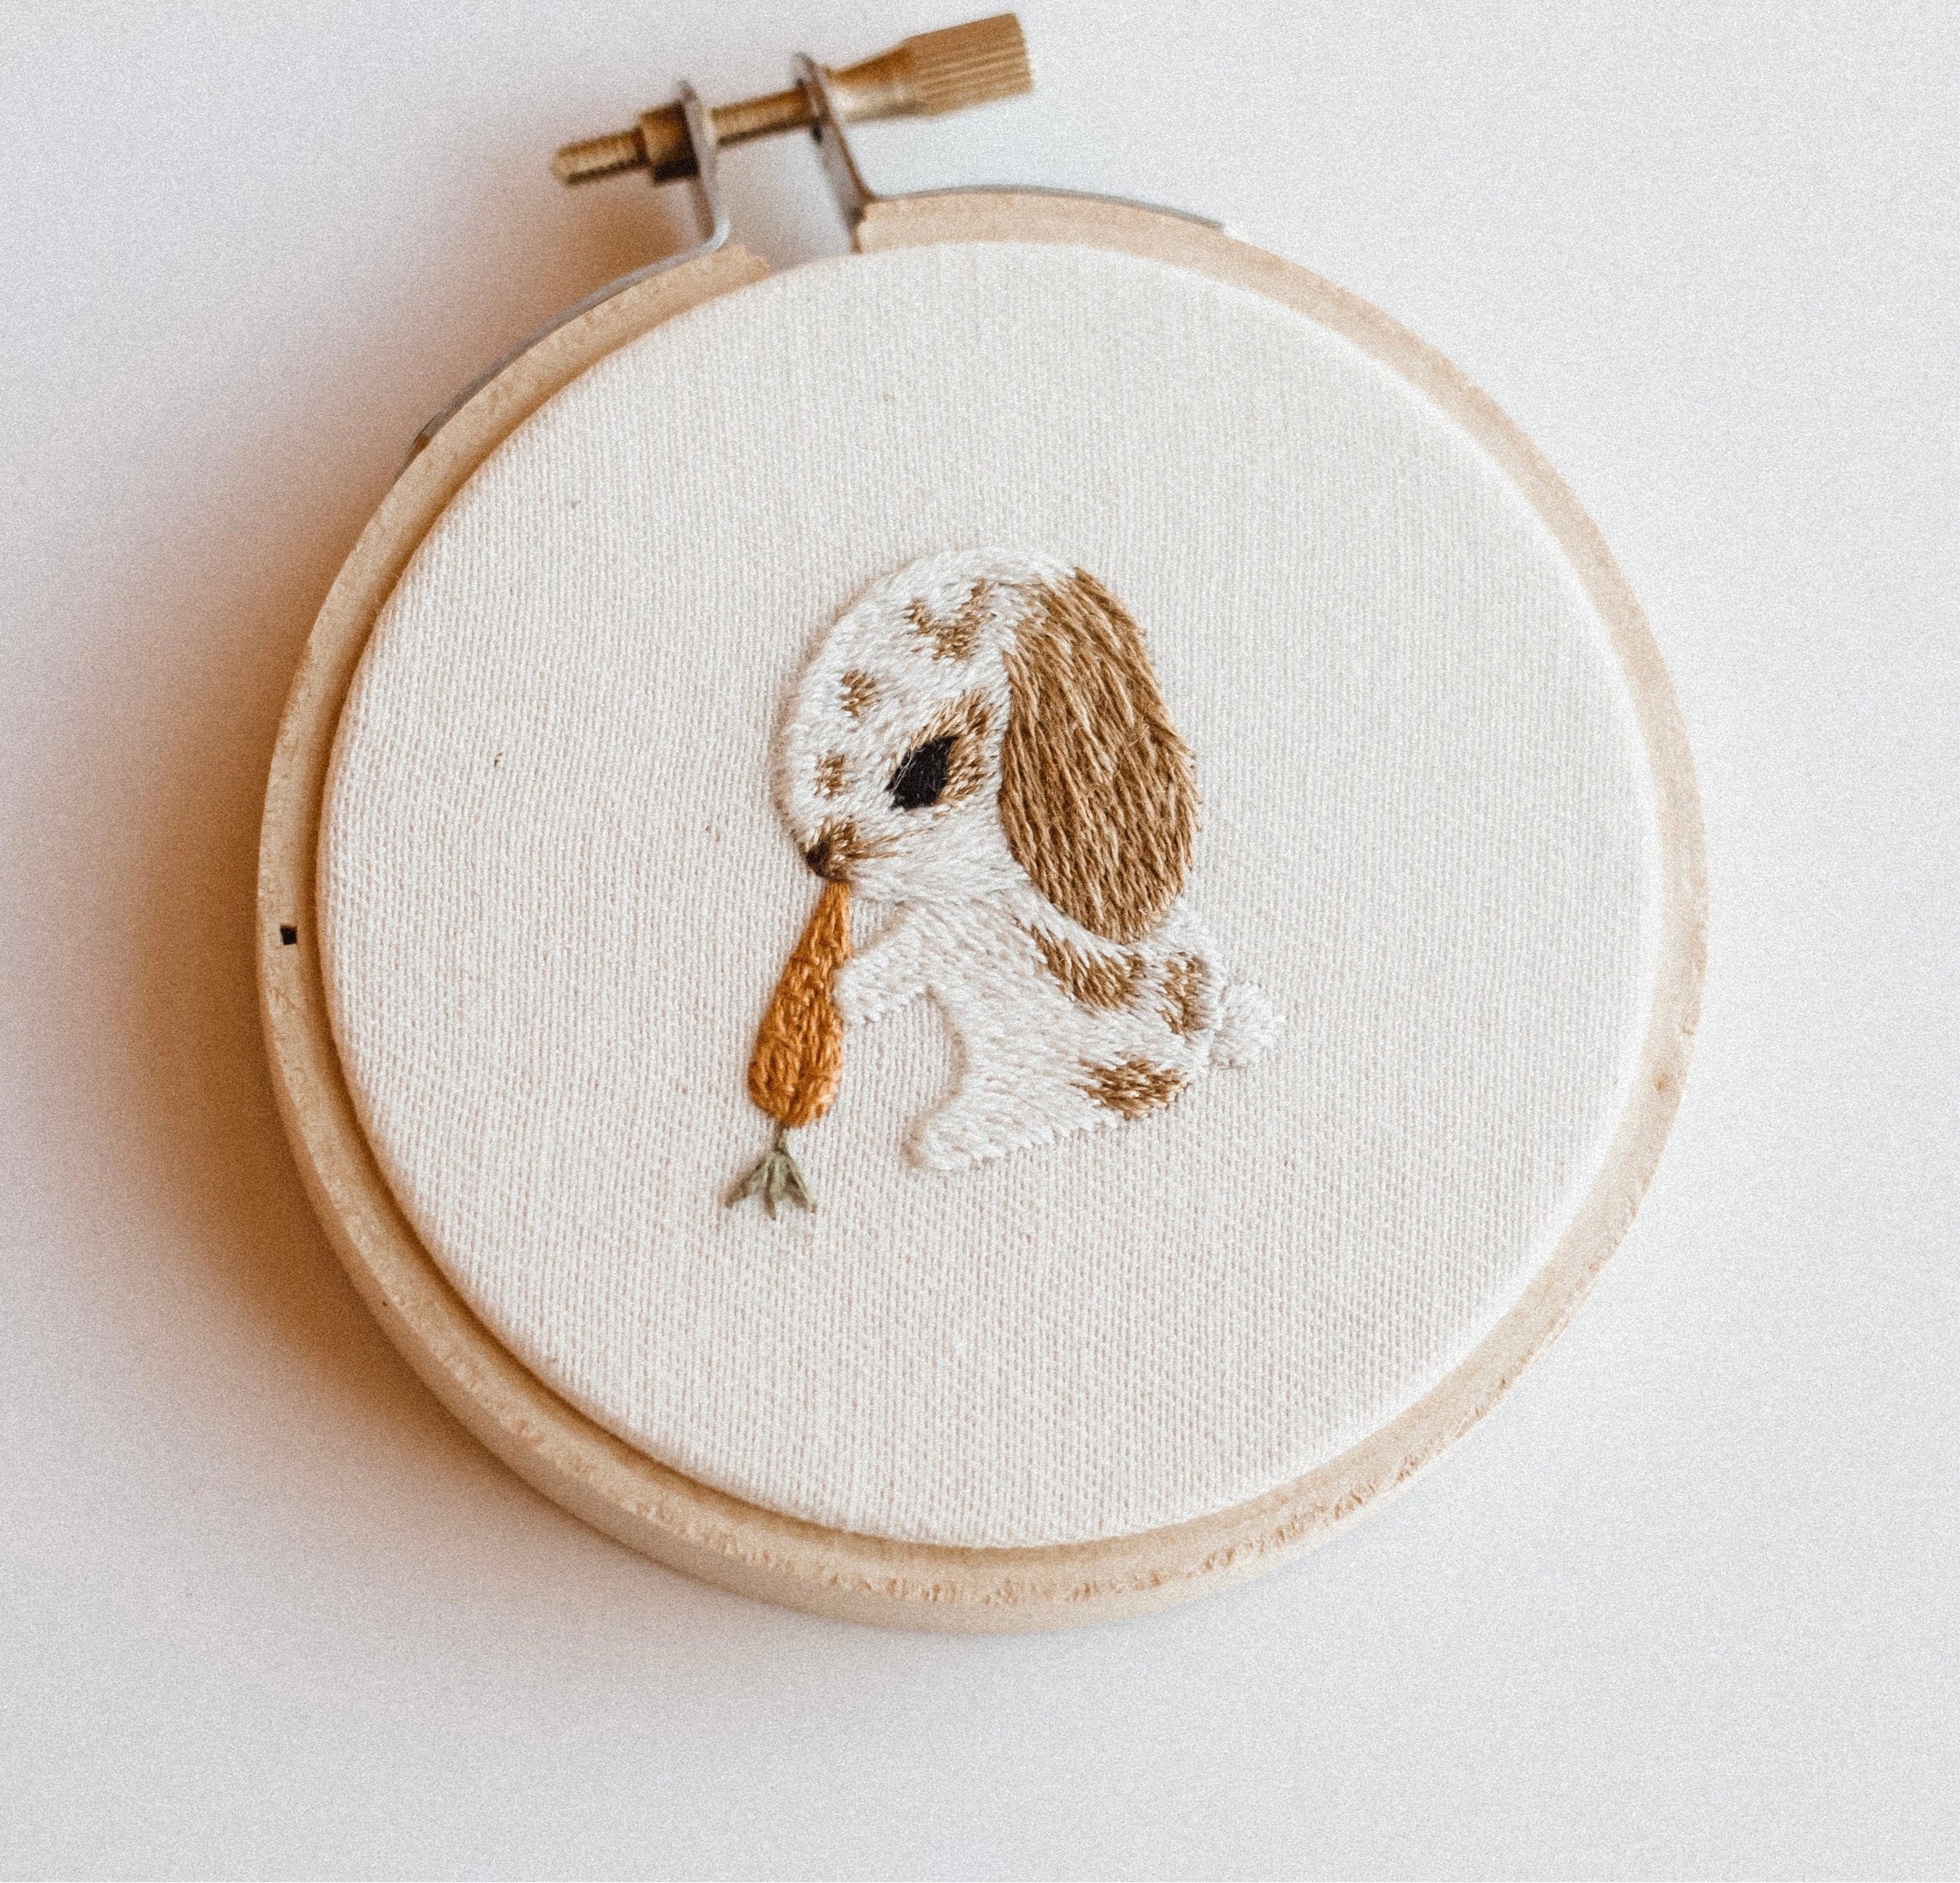 Bunny Embroidery Hoop